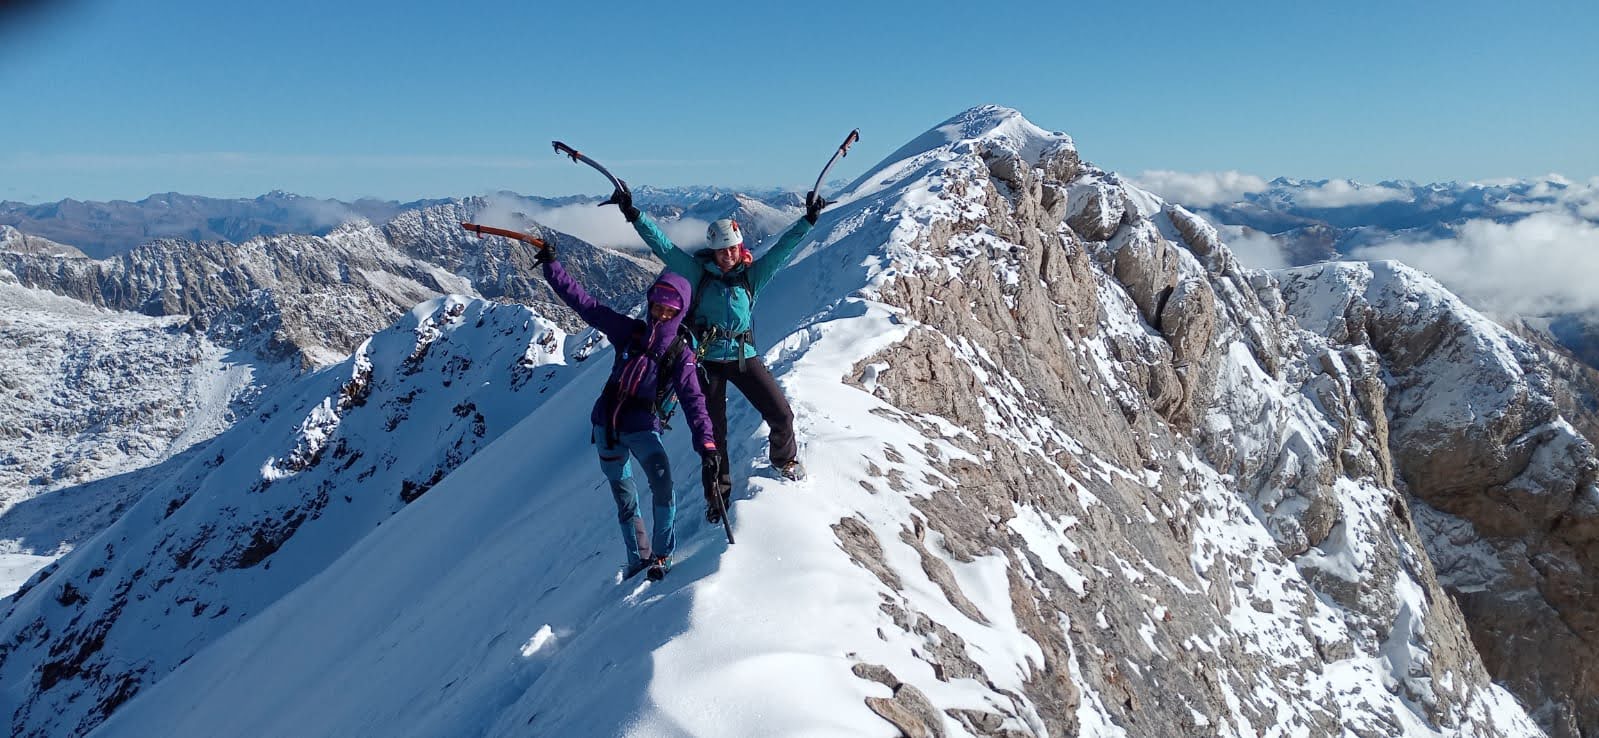 Mujeres celebrando el estar en la cima de una montaña nevada.